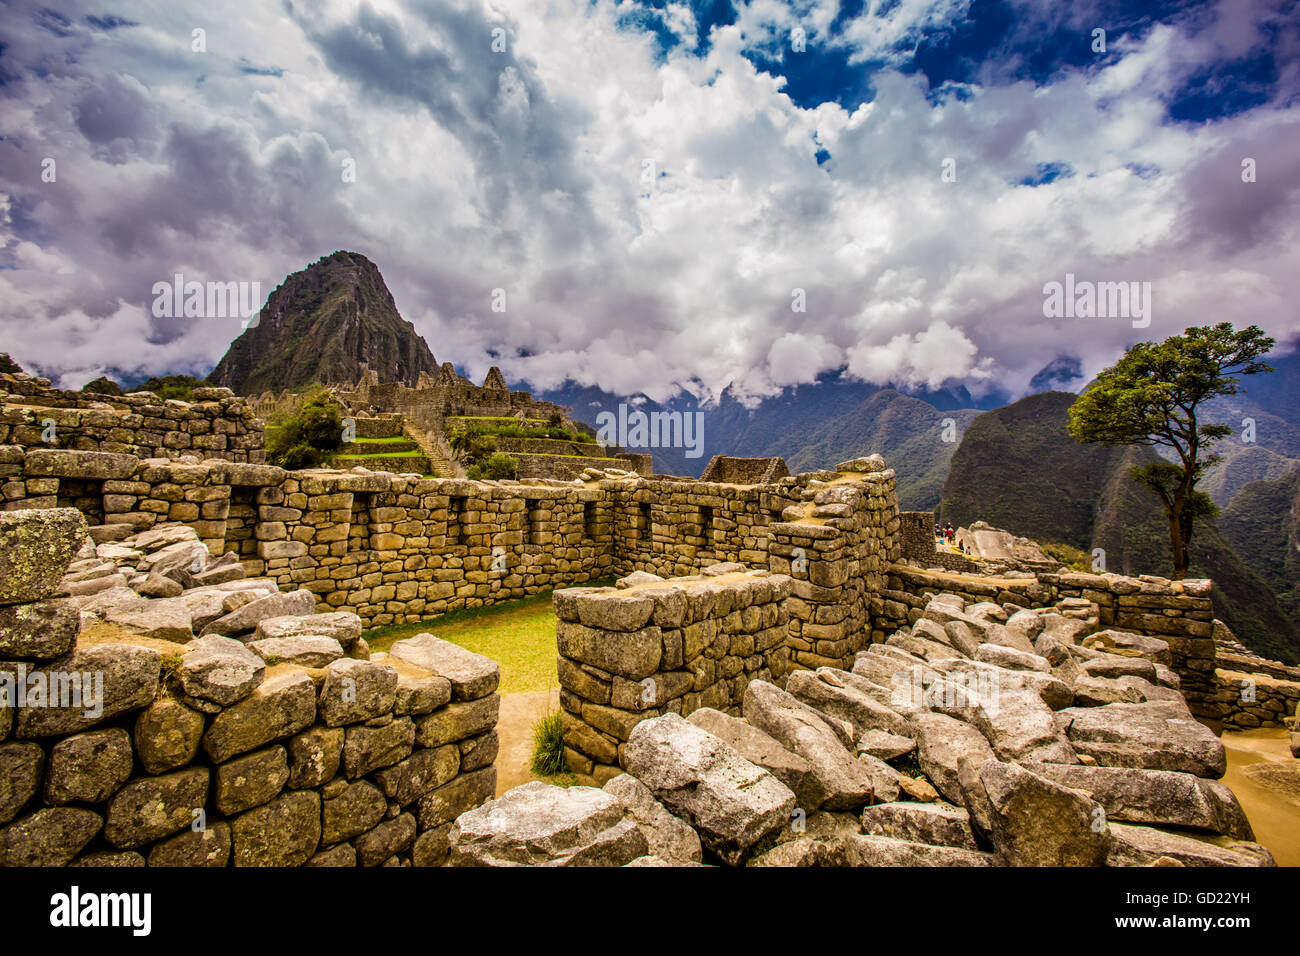 Ruines Incas de Machu Picchu, Site du patrimoine mondial de l'UNESCO, la Vallée Sacrée, le Pérou, Amérique du Sud Banque D'Images